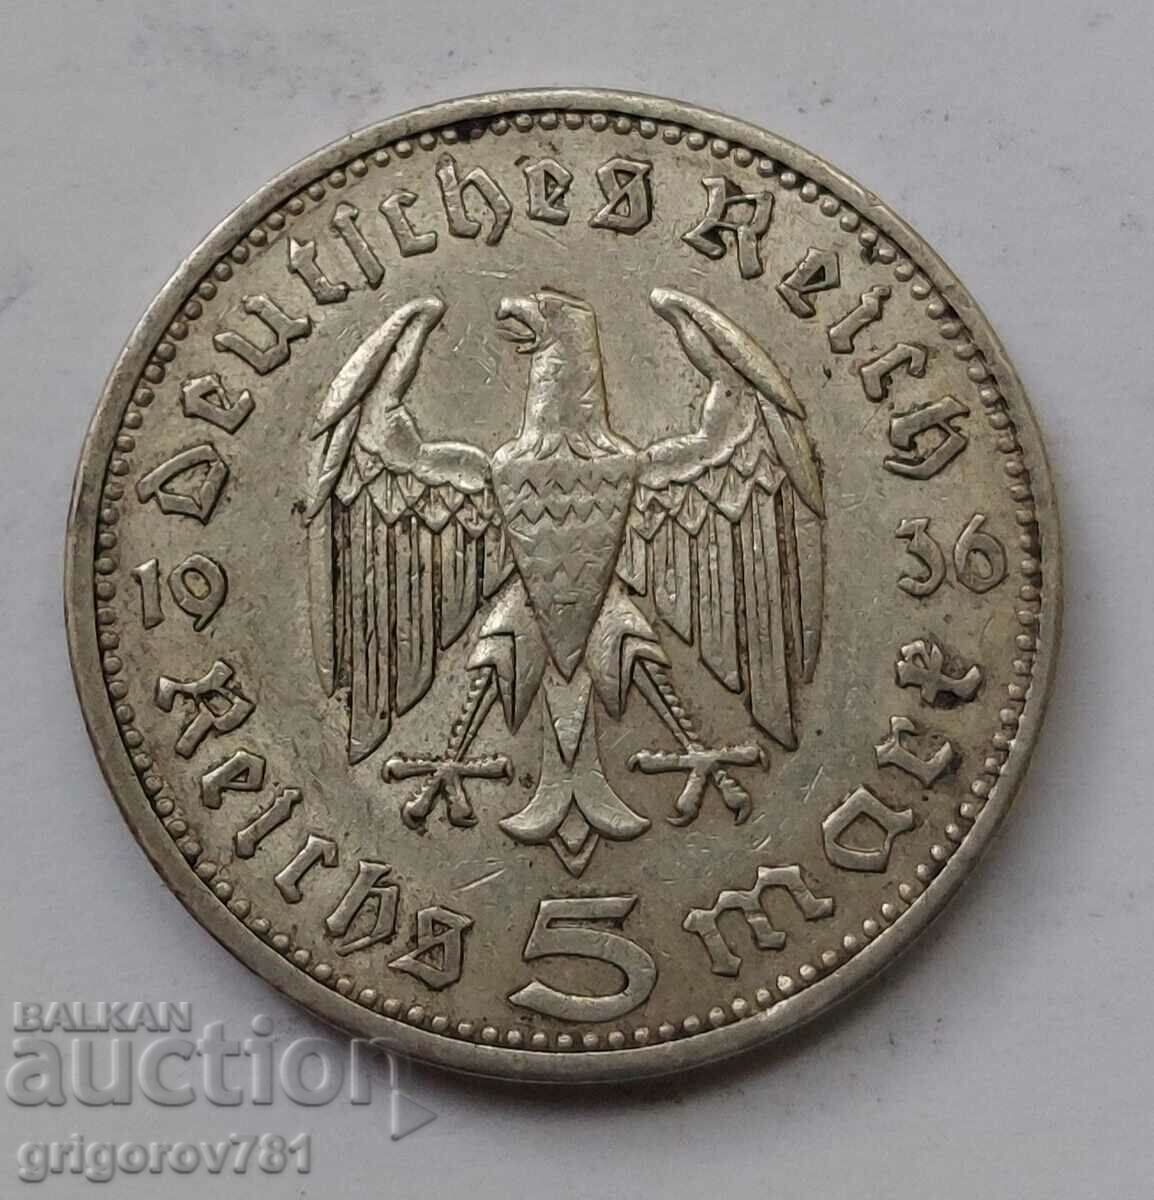 5 mărci de argint Germania 1936 A III Reich Moneda de argint #95